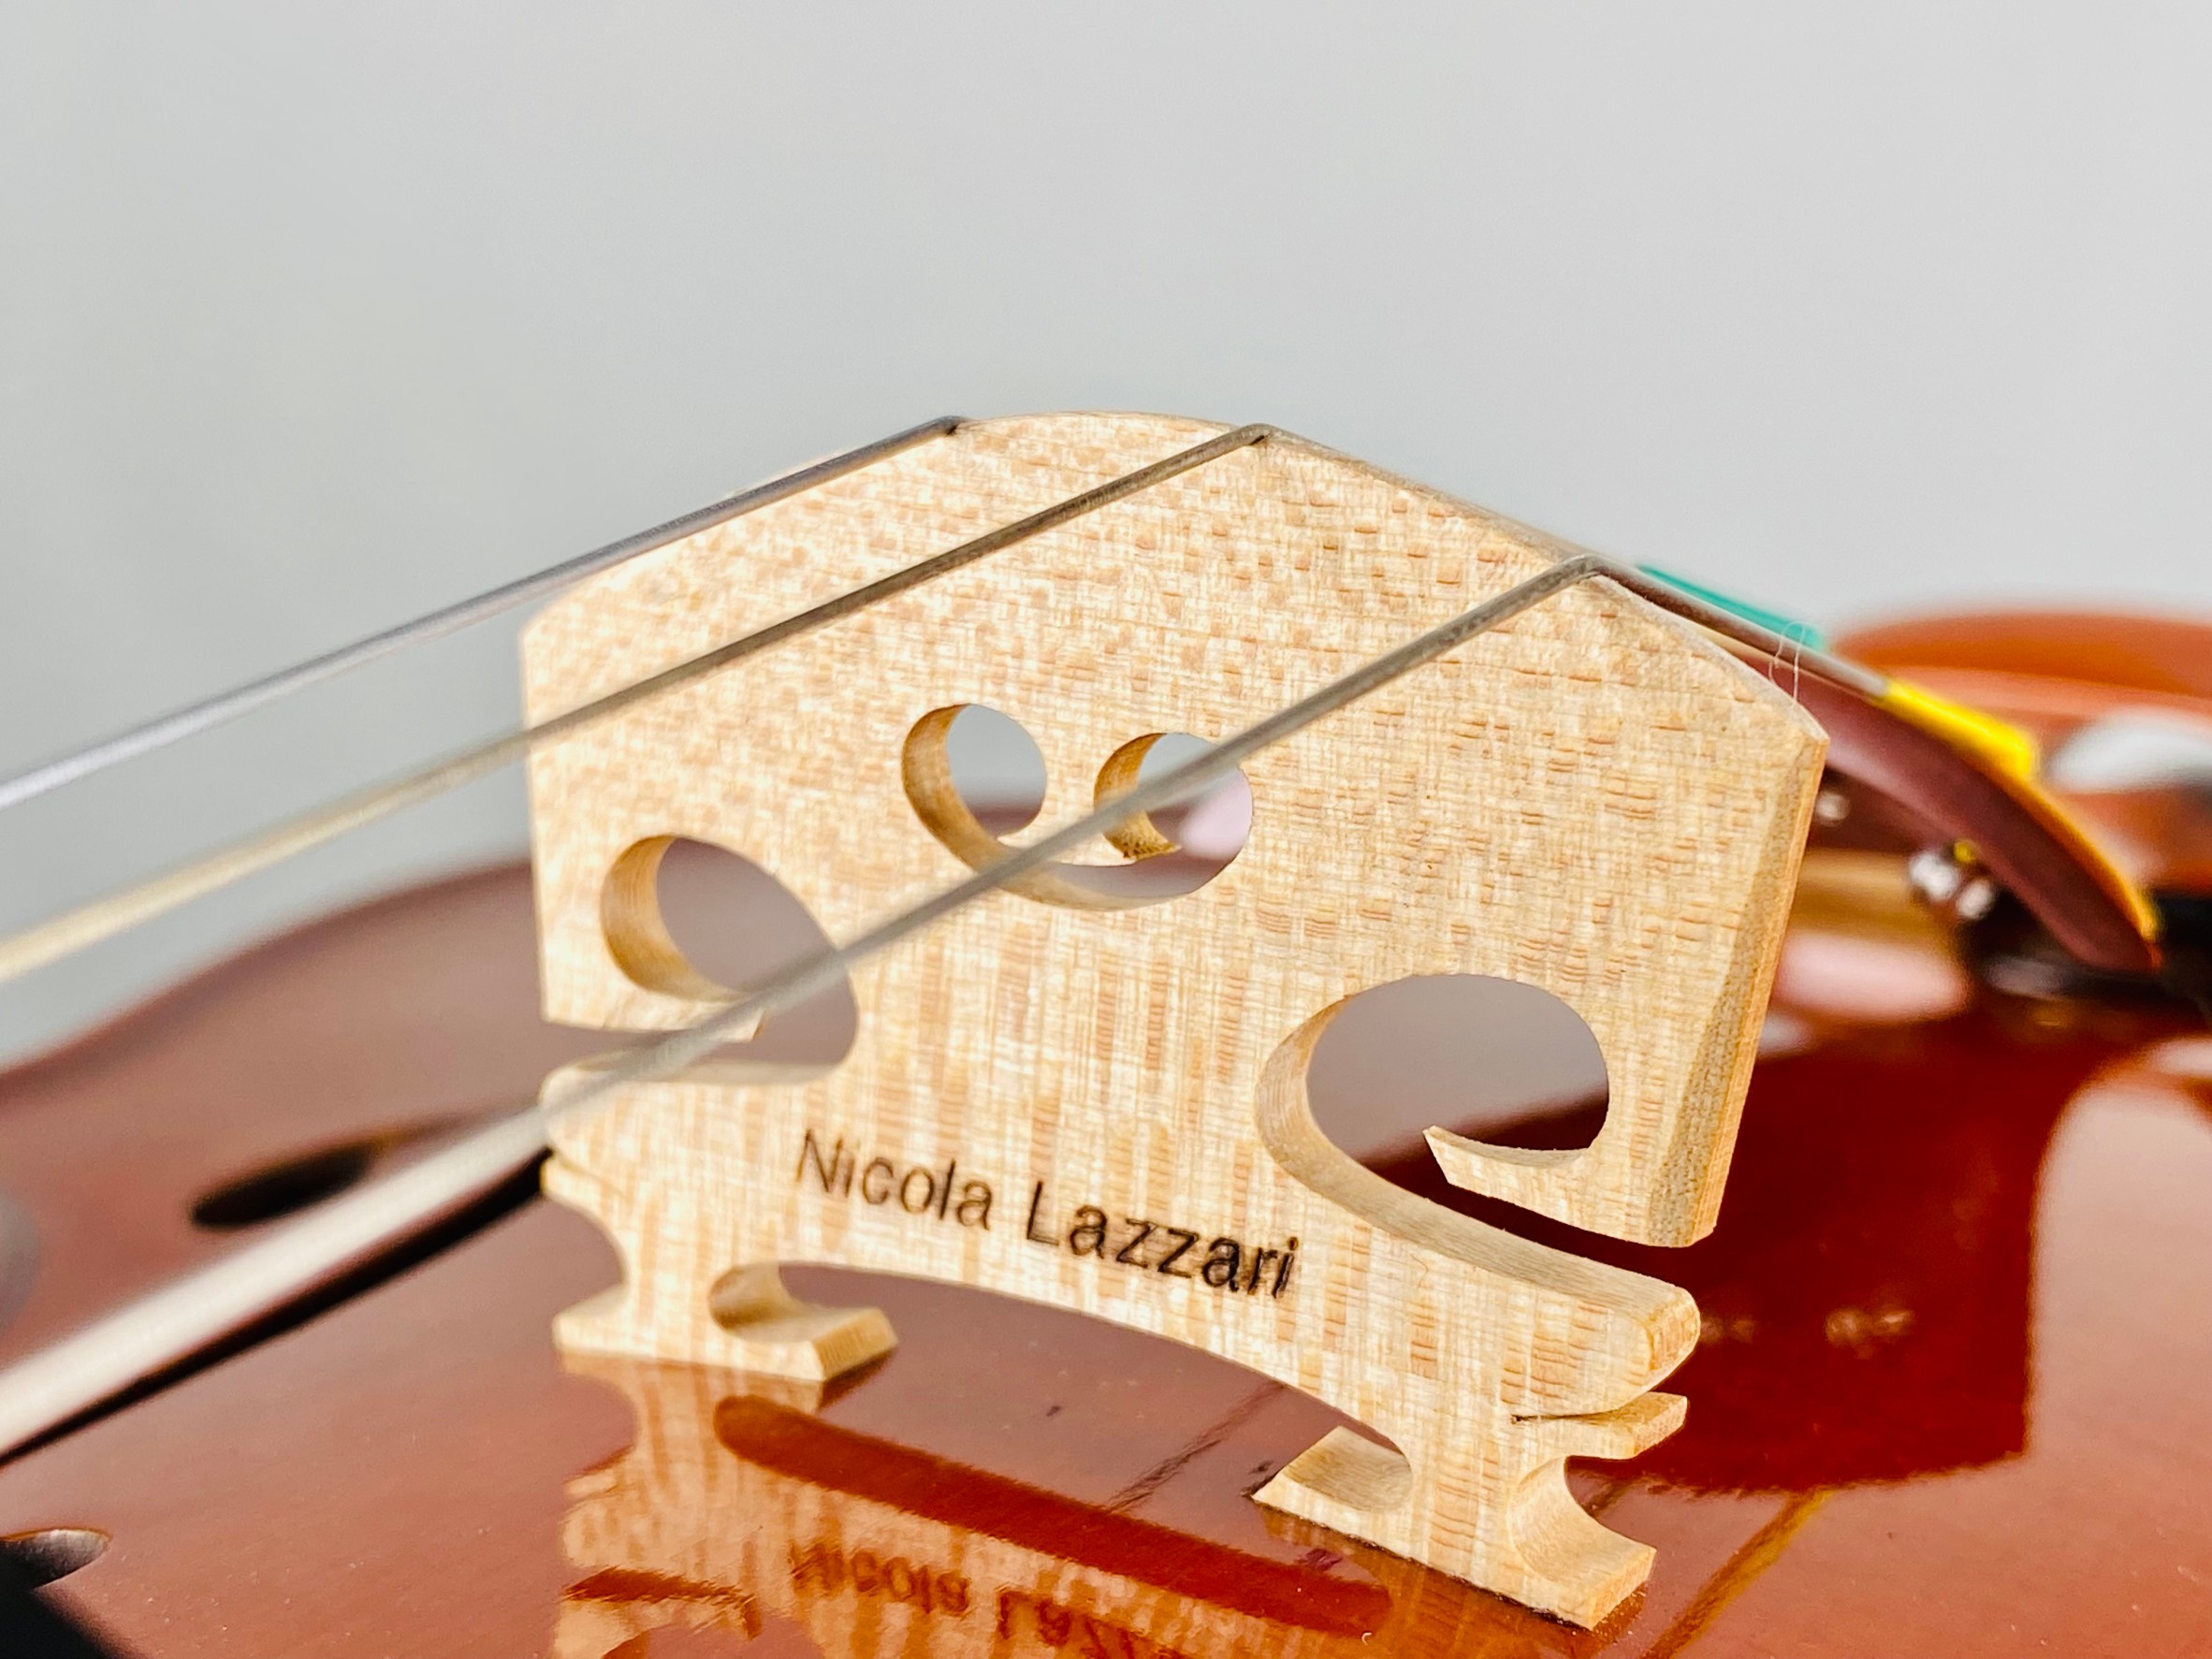 Nicola Lazzari(二コラ・ラザーリ)氏の新作ヴァイオリンが入荷致しました。丁寧な作りで人気を博しており、いま最も入手困難な製作家の一人です。2017年の入荷依頼、実に5年ぶりの入荷となりました。 本作は、Antonio Stradivari（アントニオ・ストラディヴァリ） の1705年の […]